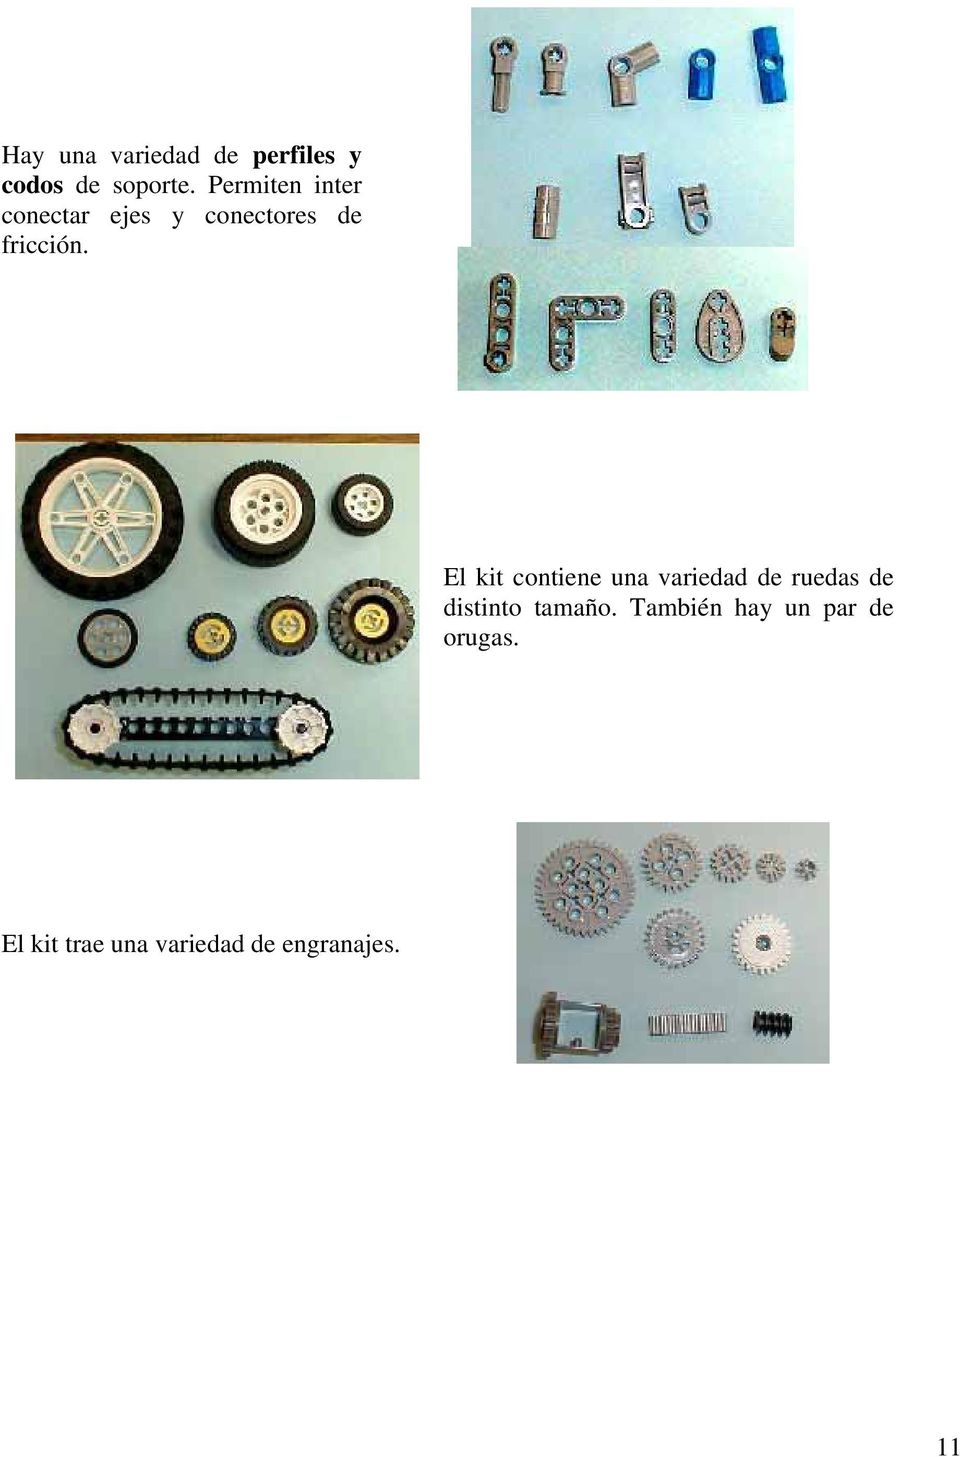 El kit contiene una variedad de ruedas de distinto tamaño.